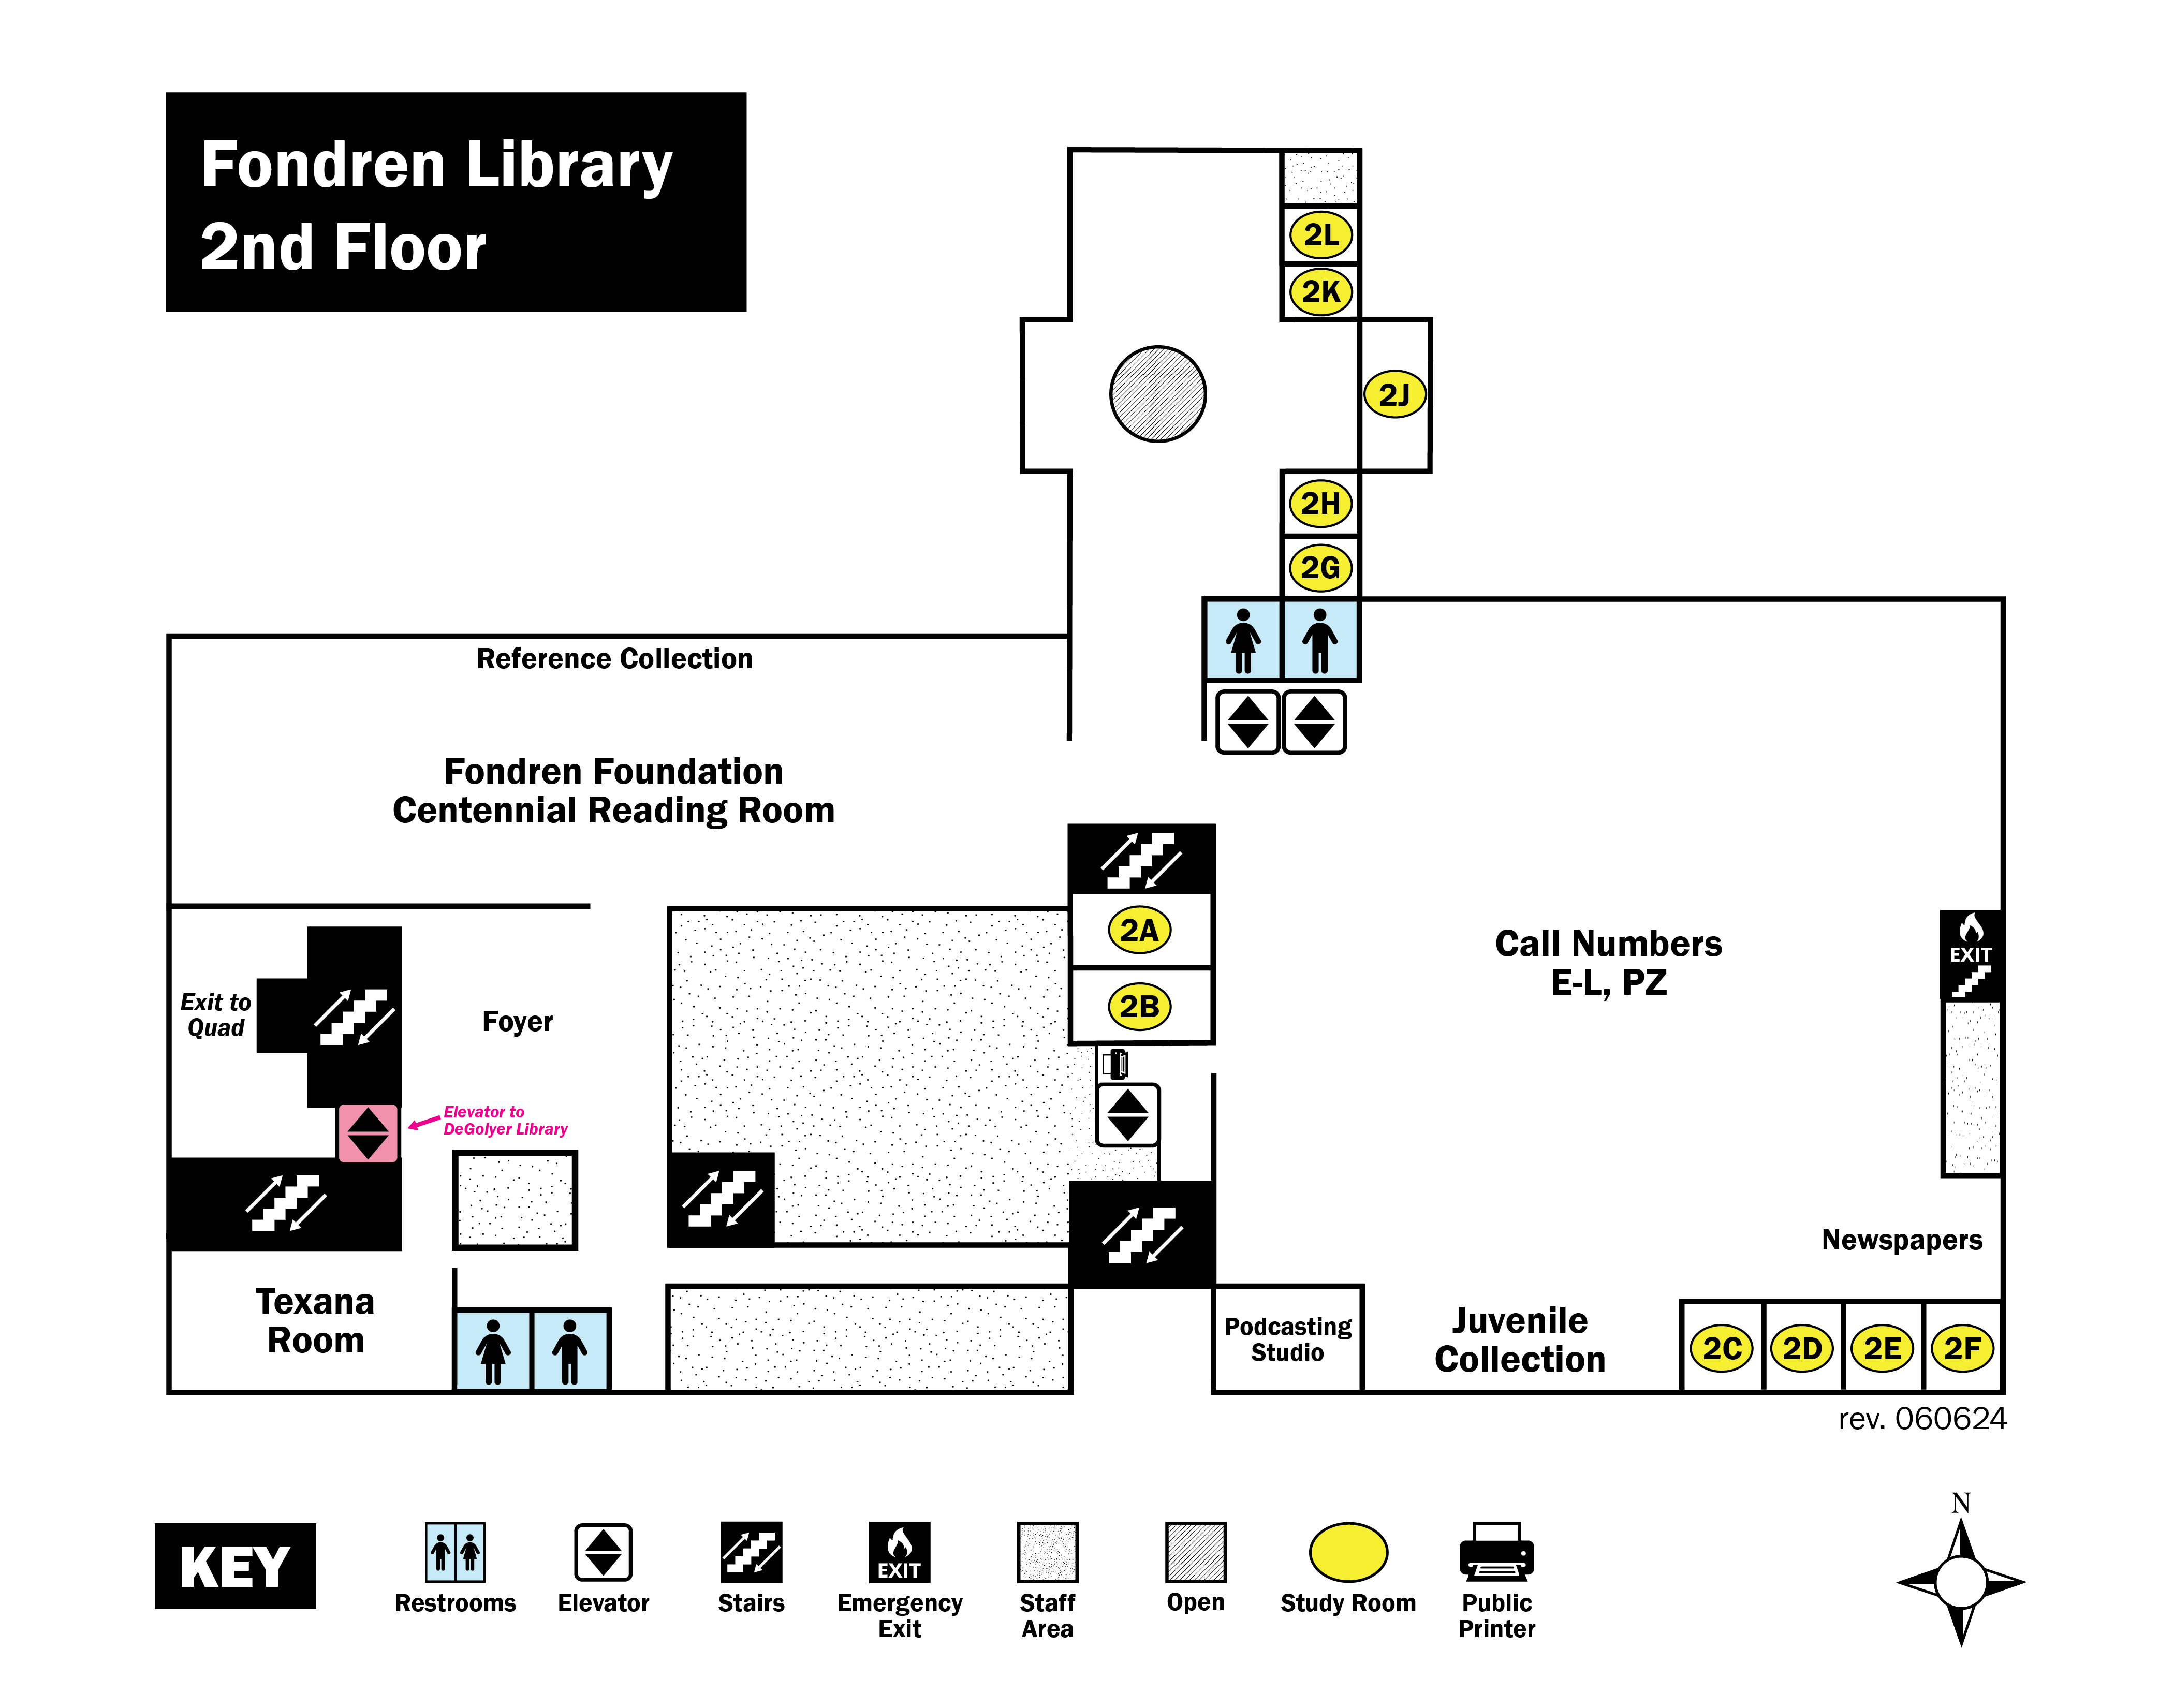 Fondren Library Red, 2nd floor